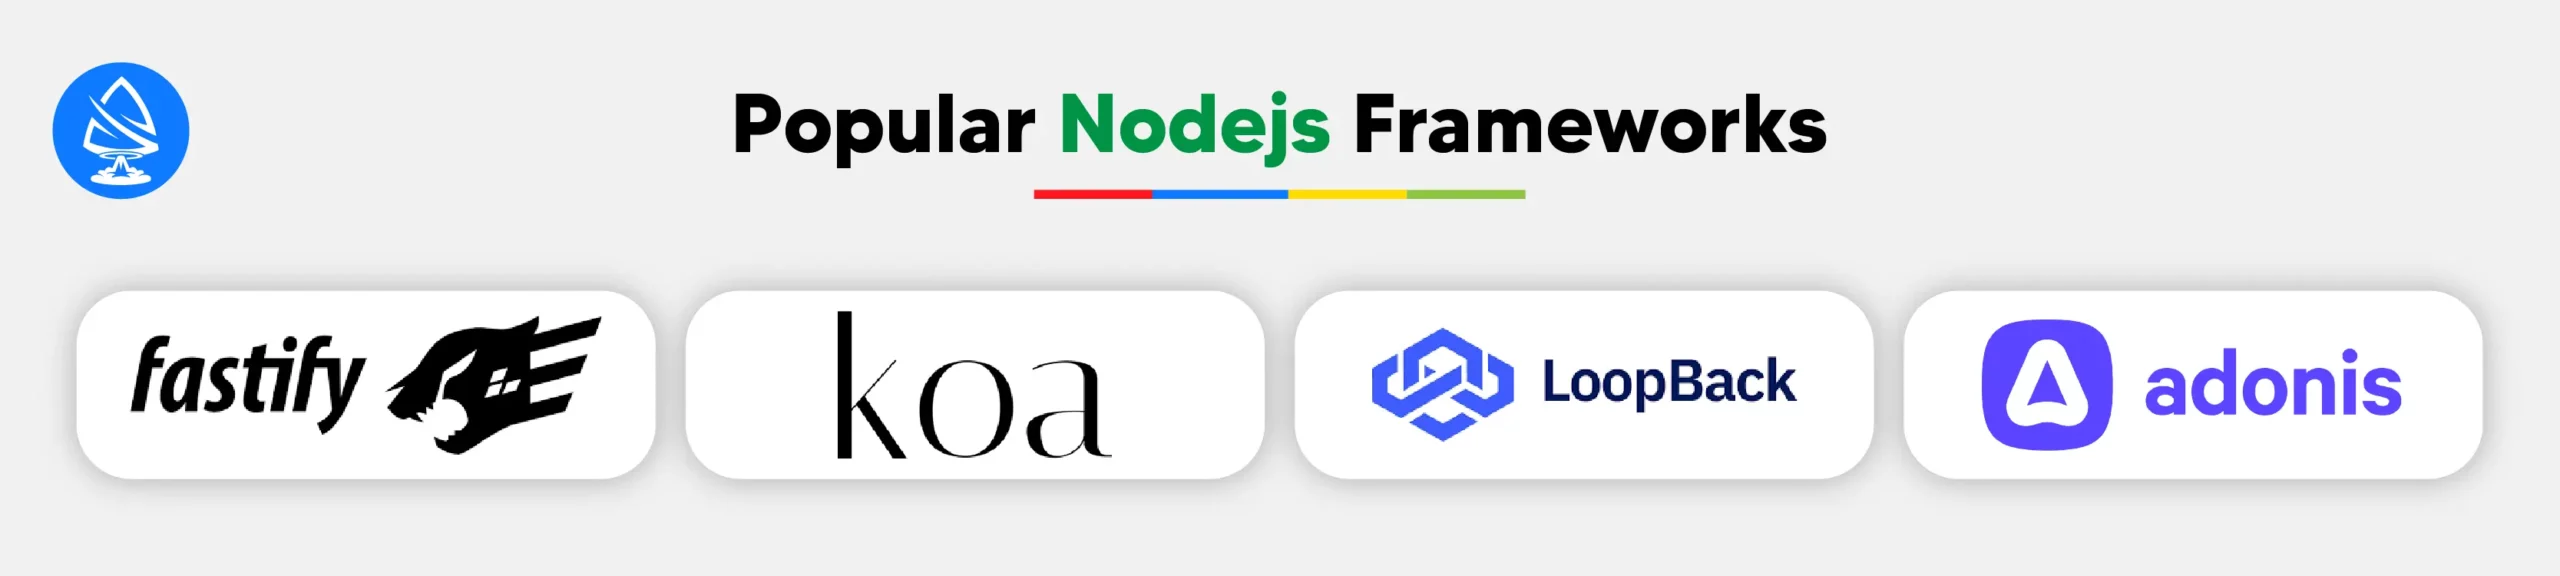 Popular Nodejs Frameworks 